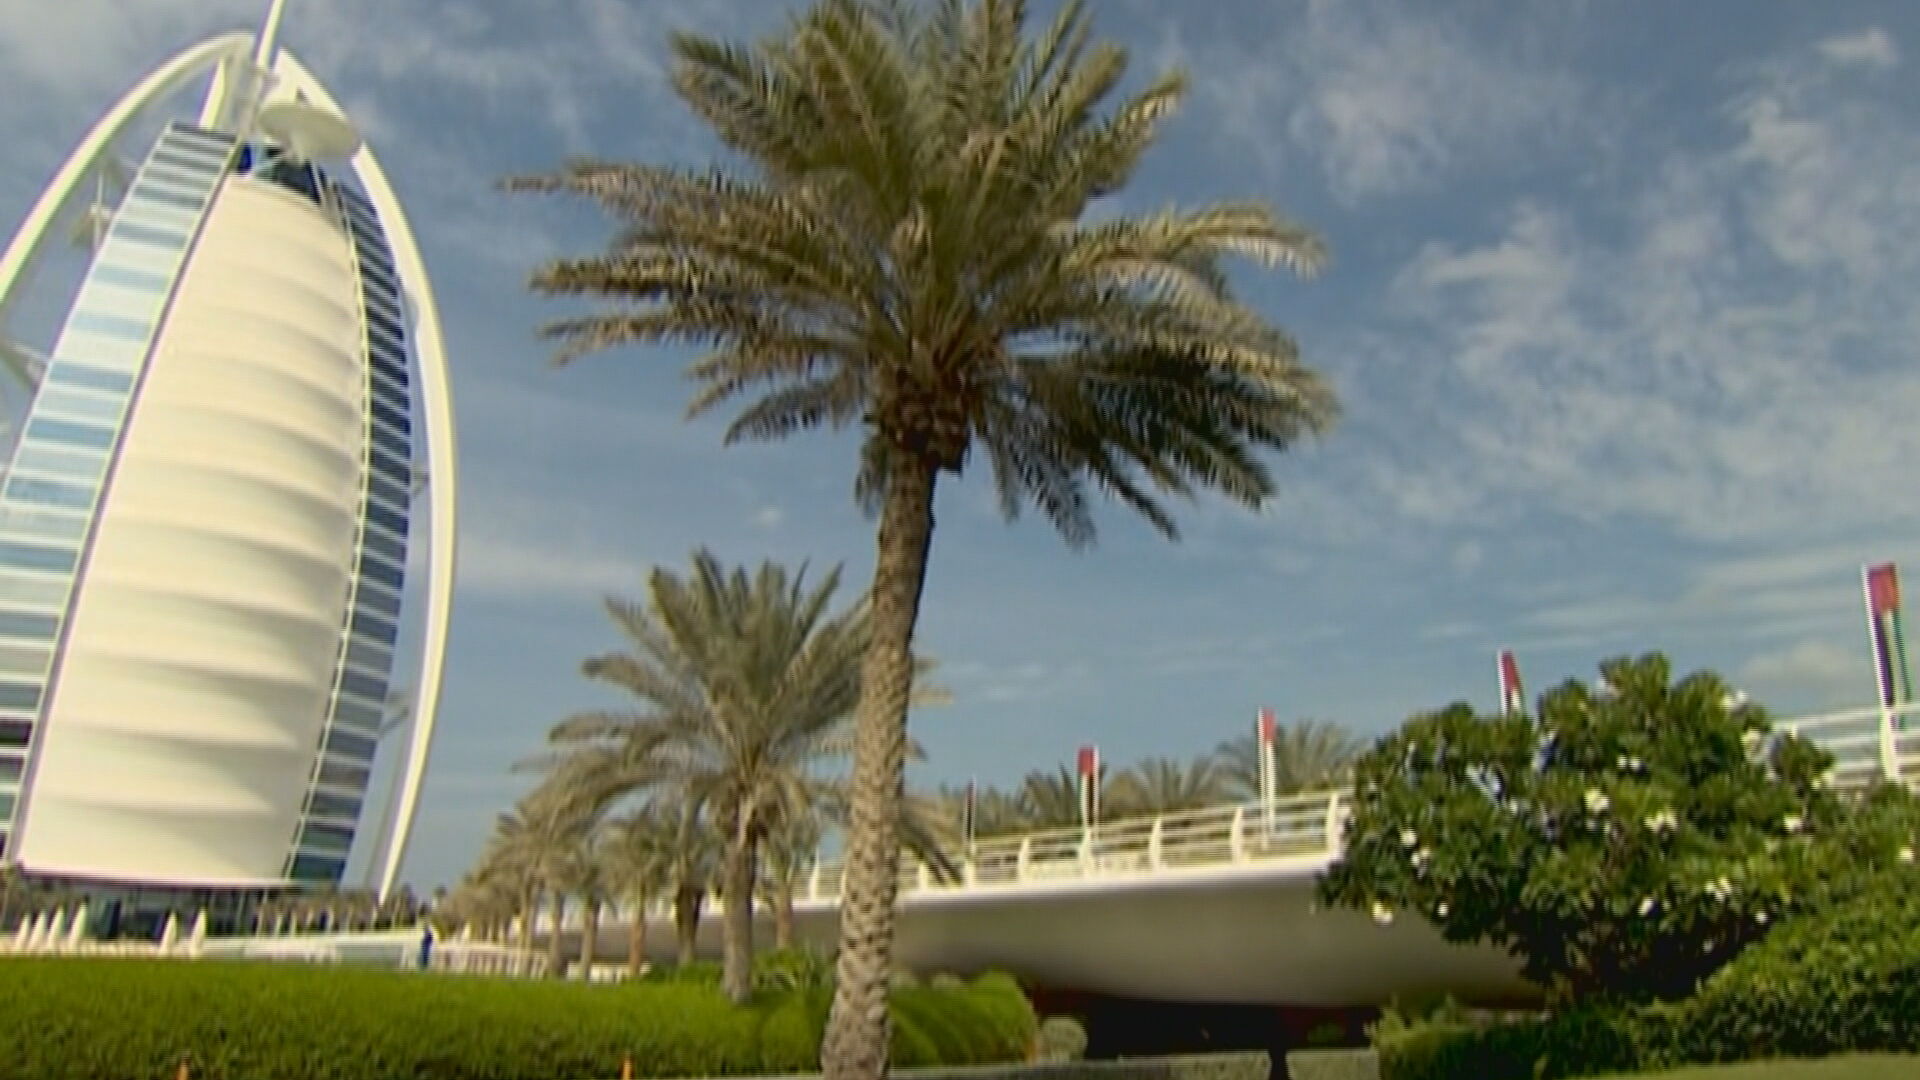 Casos de Covid-19 aumentam no Emirados Árabes com turismo